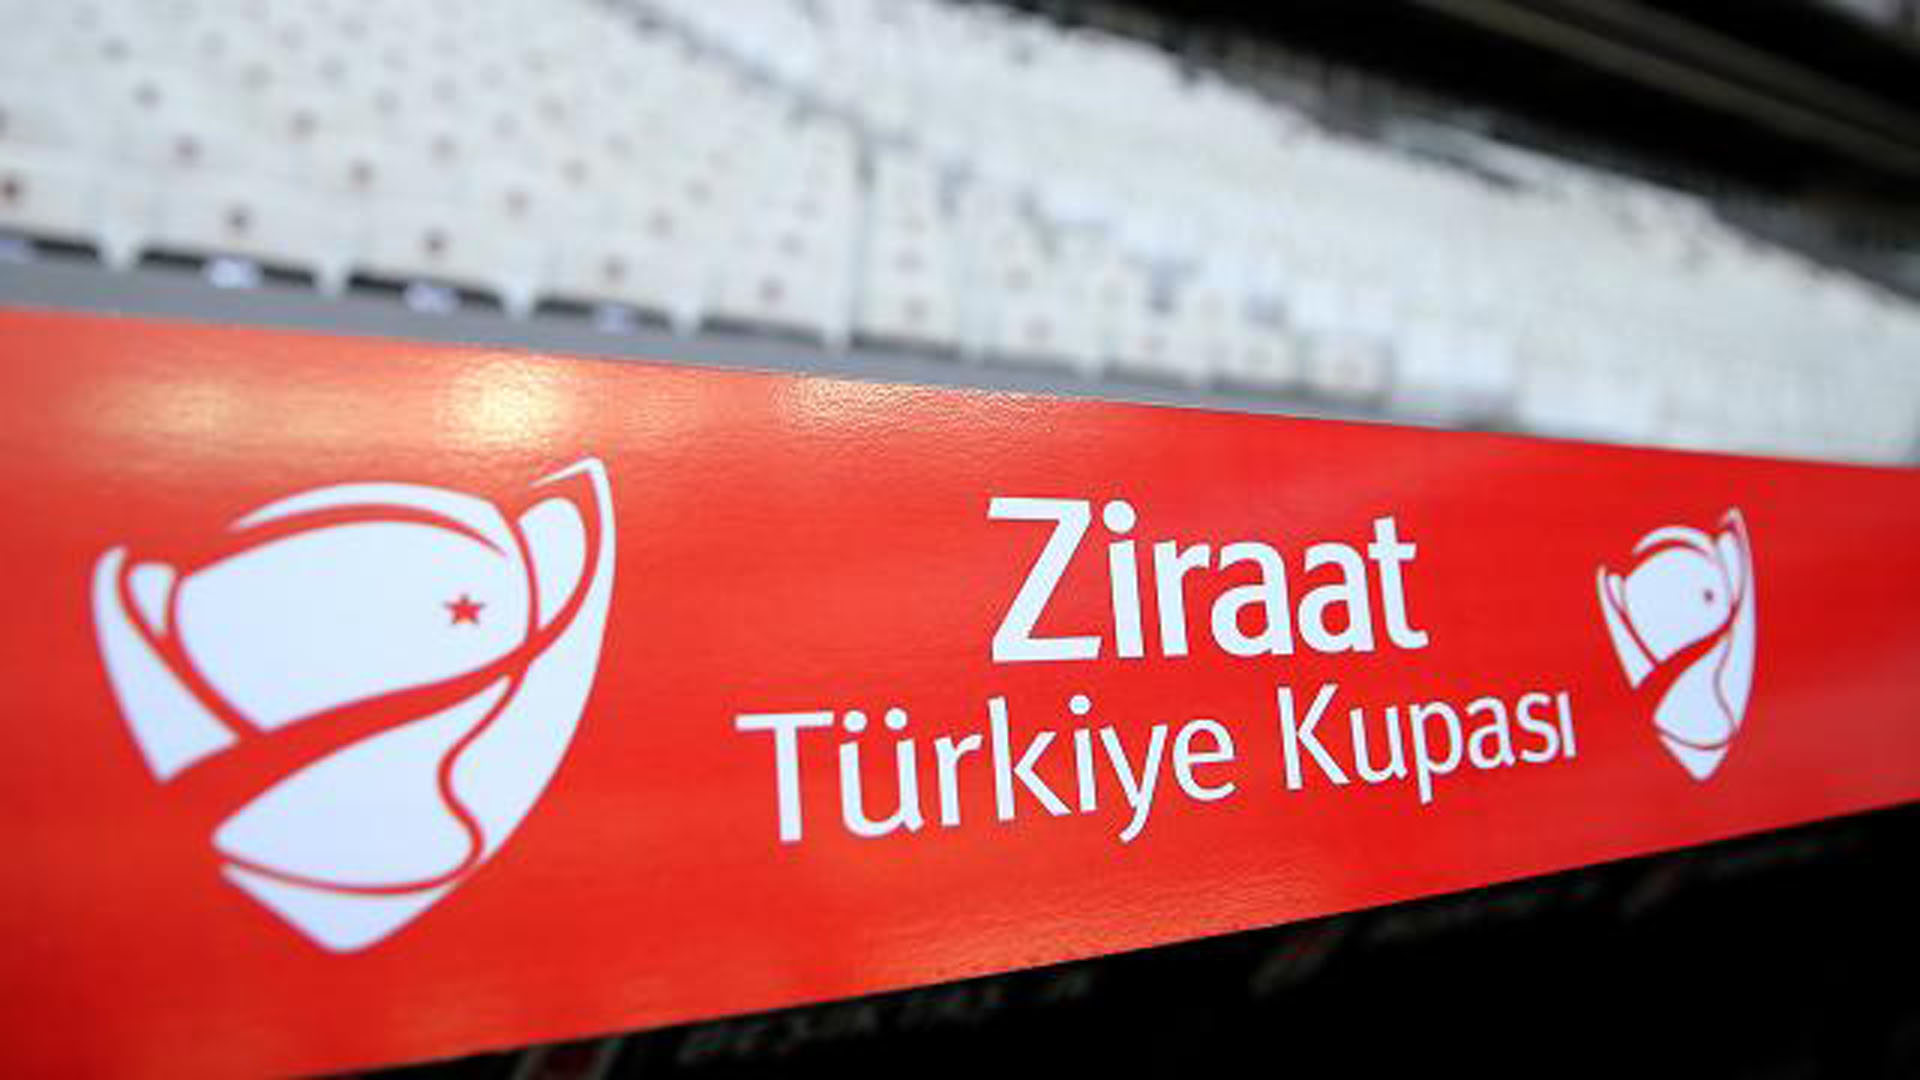 ziraat-turkiye-kupasi-1479079-2-001.jpg